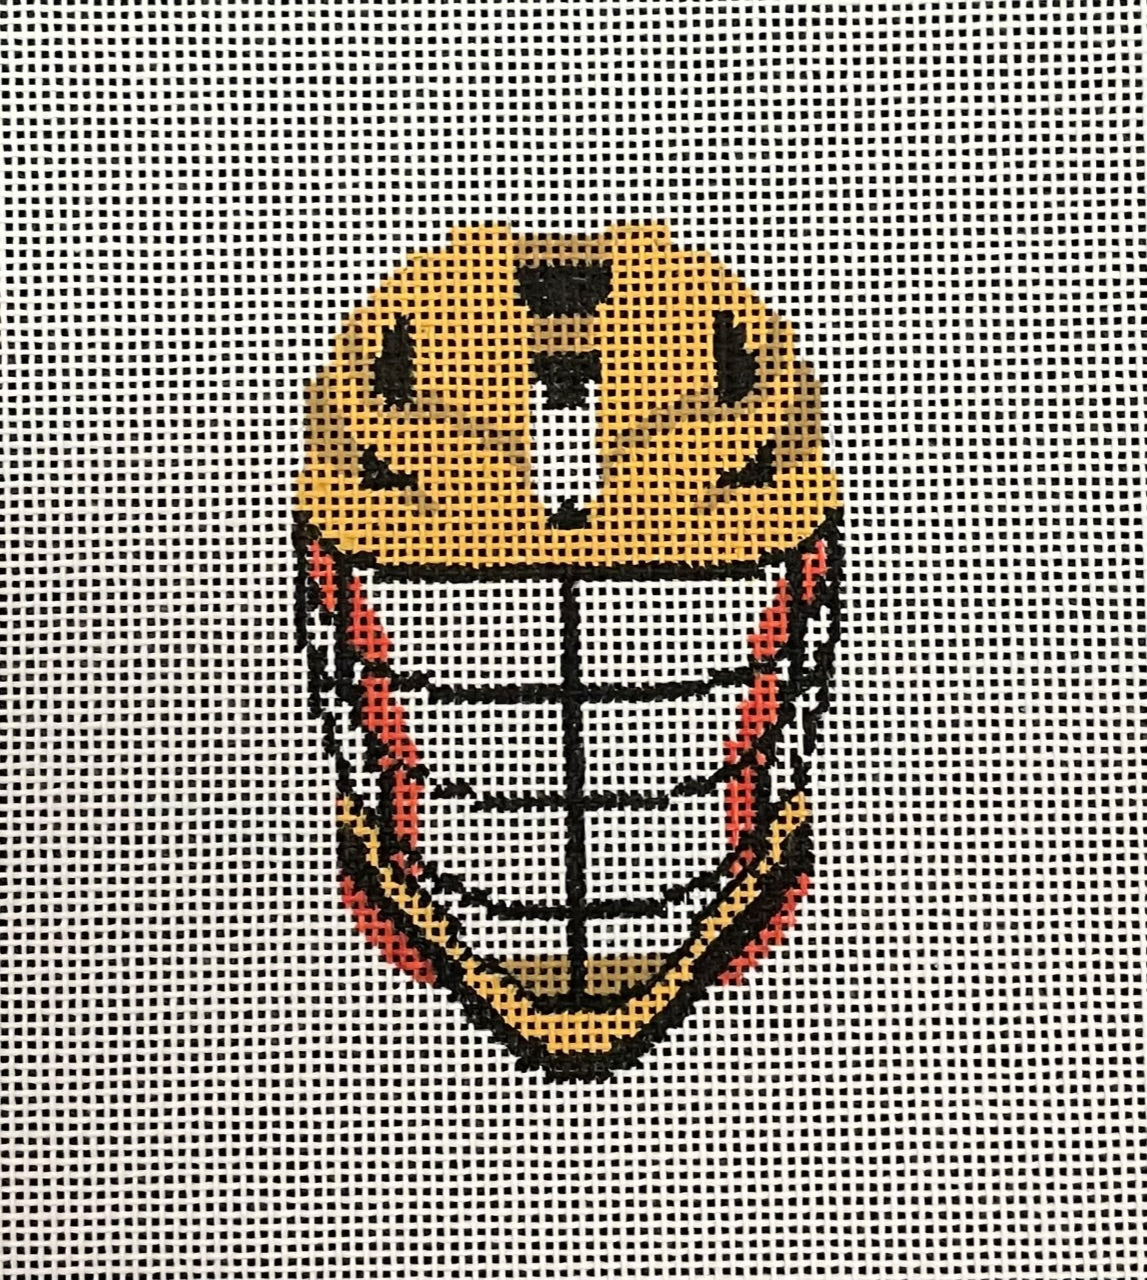 AL-091 - Lacrosse Helmet